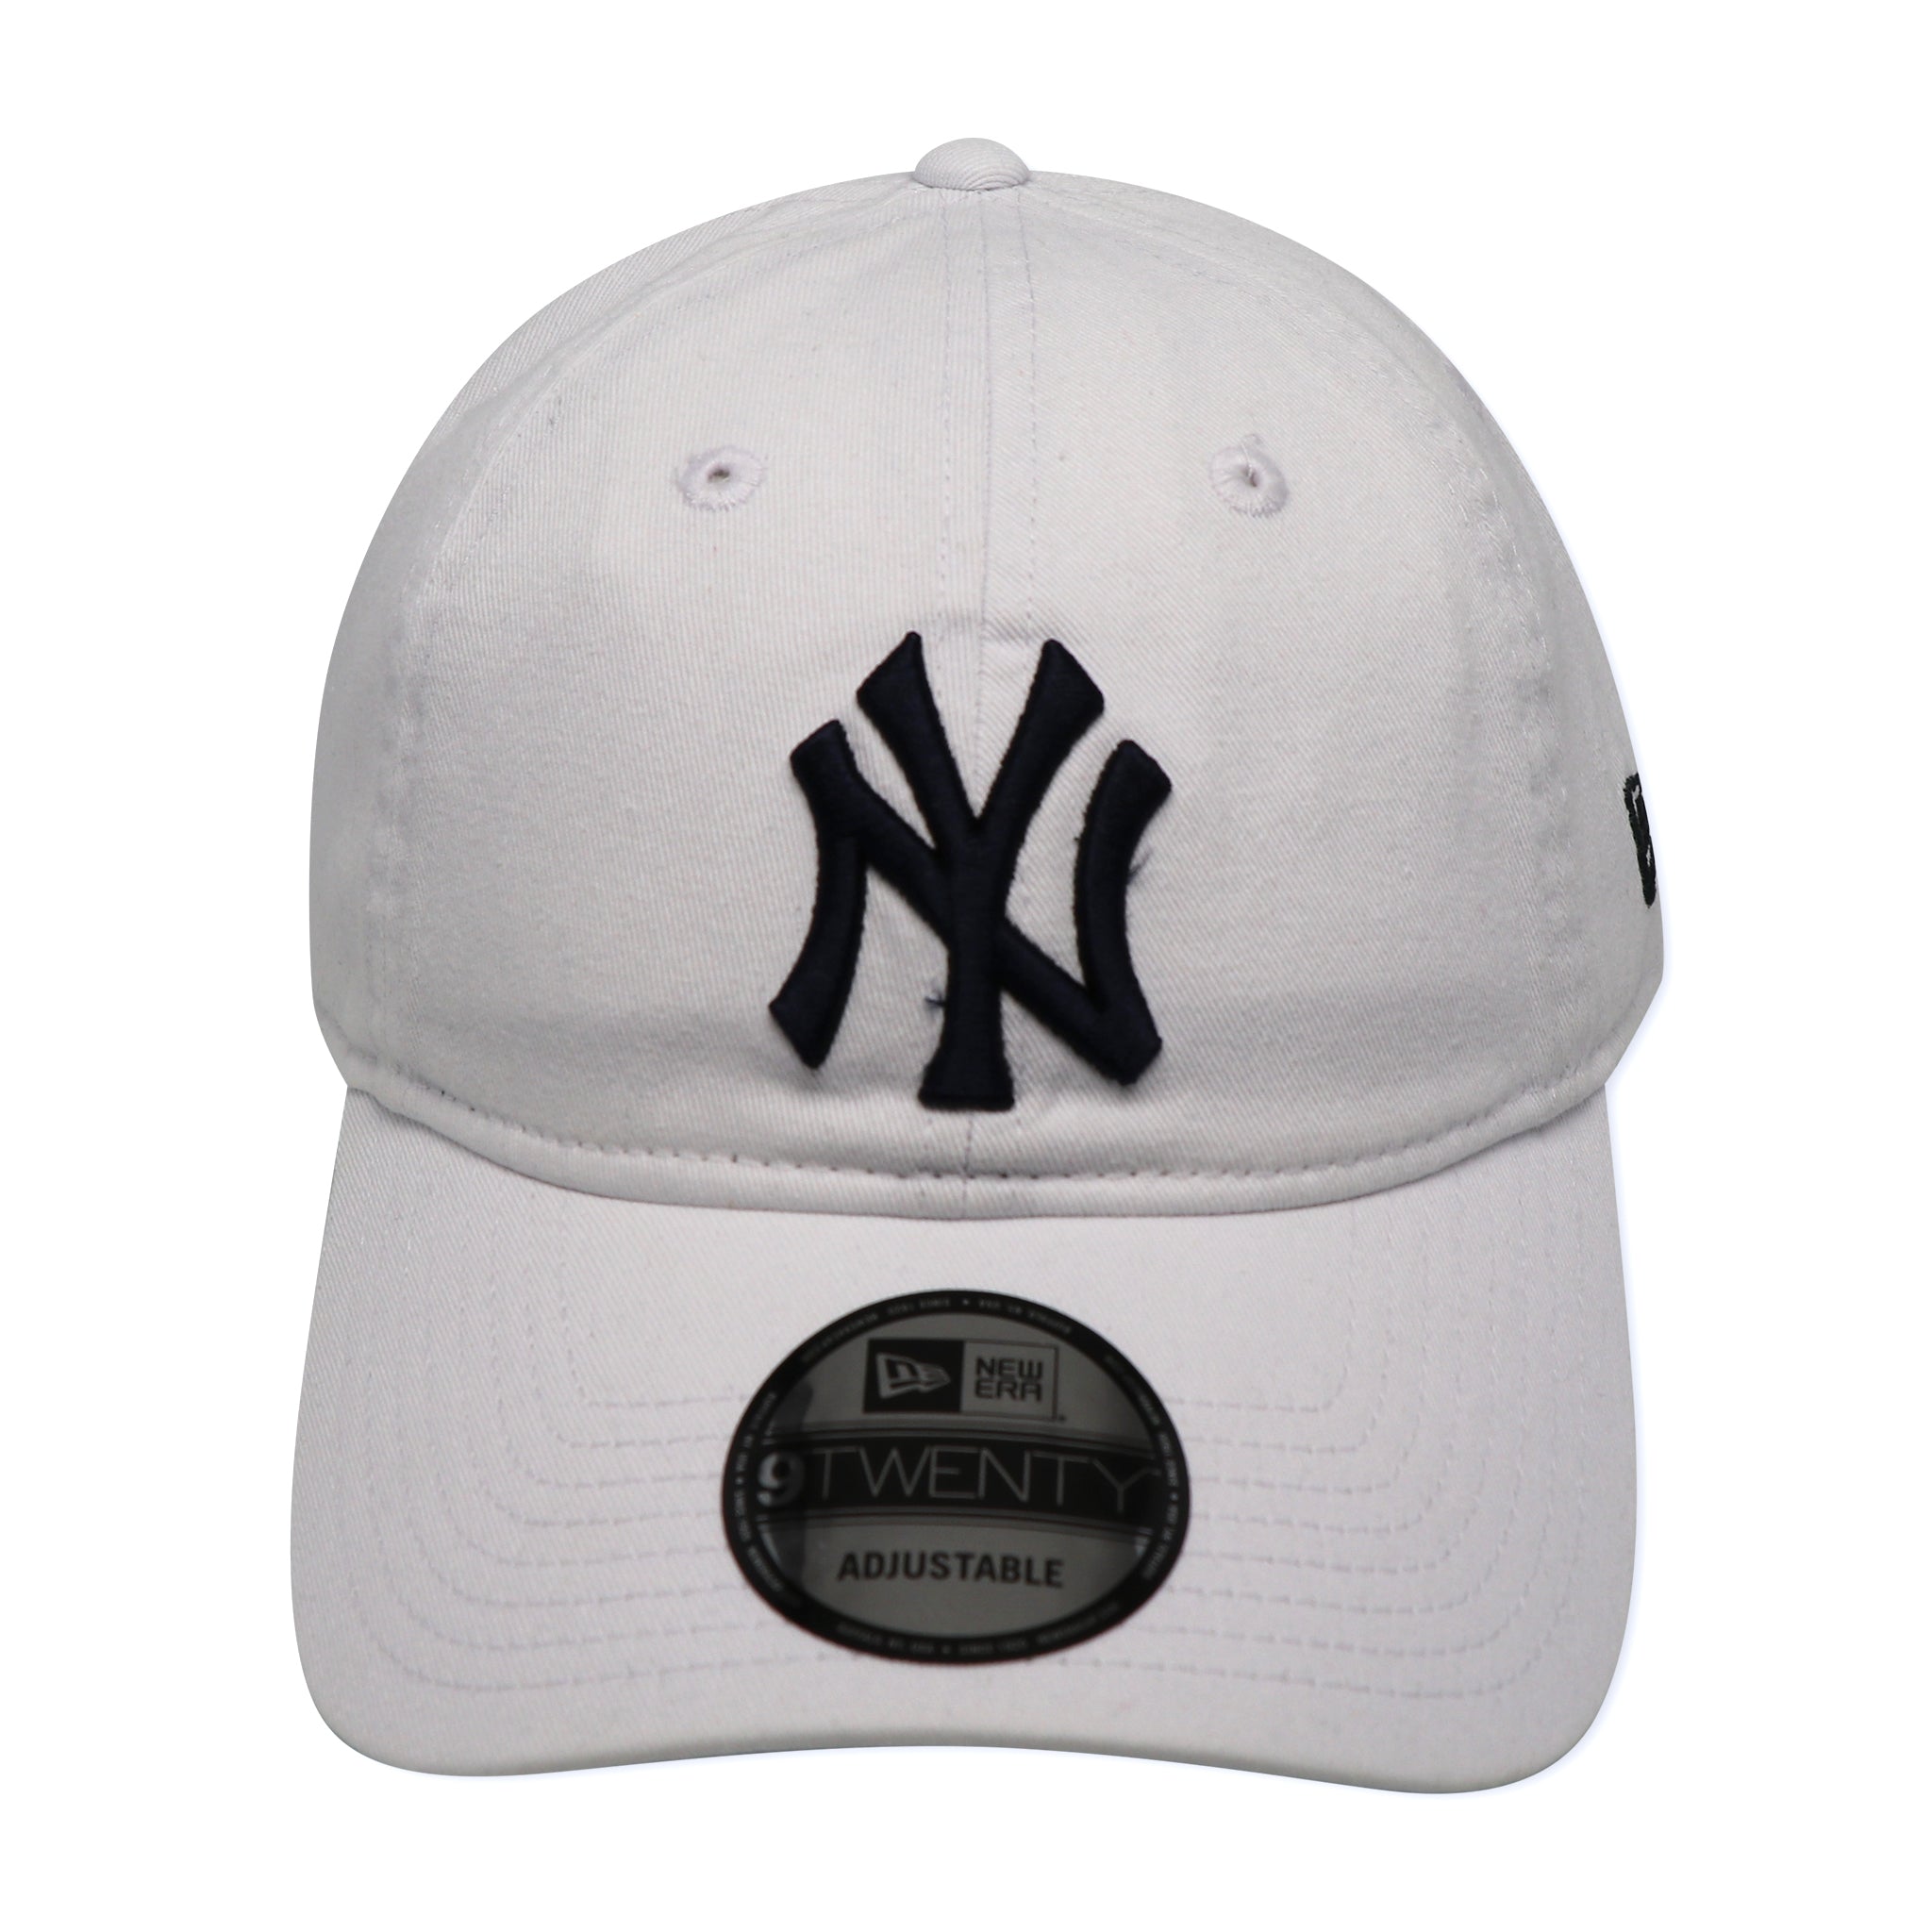 NEW YORK YANKEES (WHITE) NEW ERA 920 DAD HAT